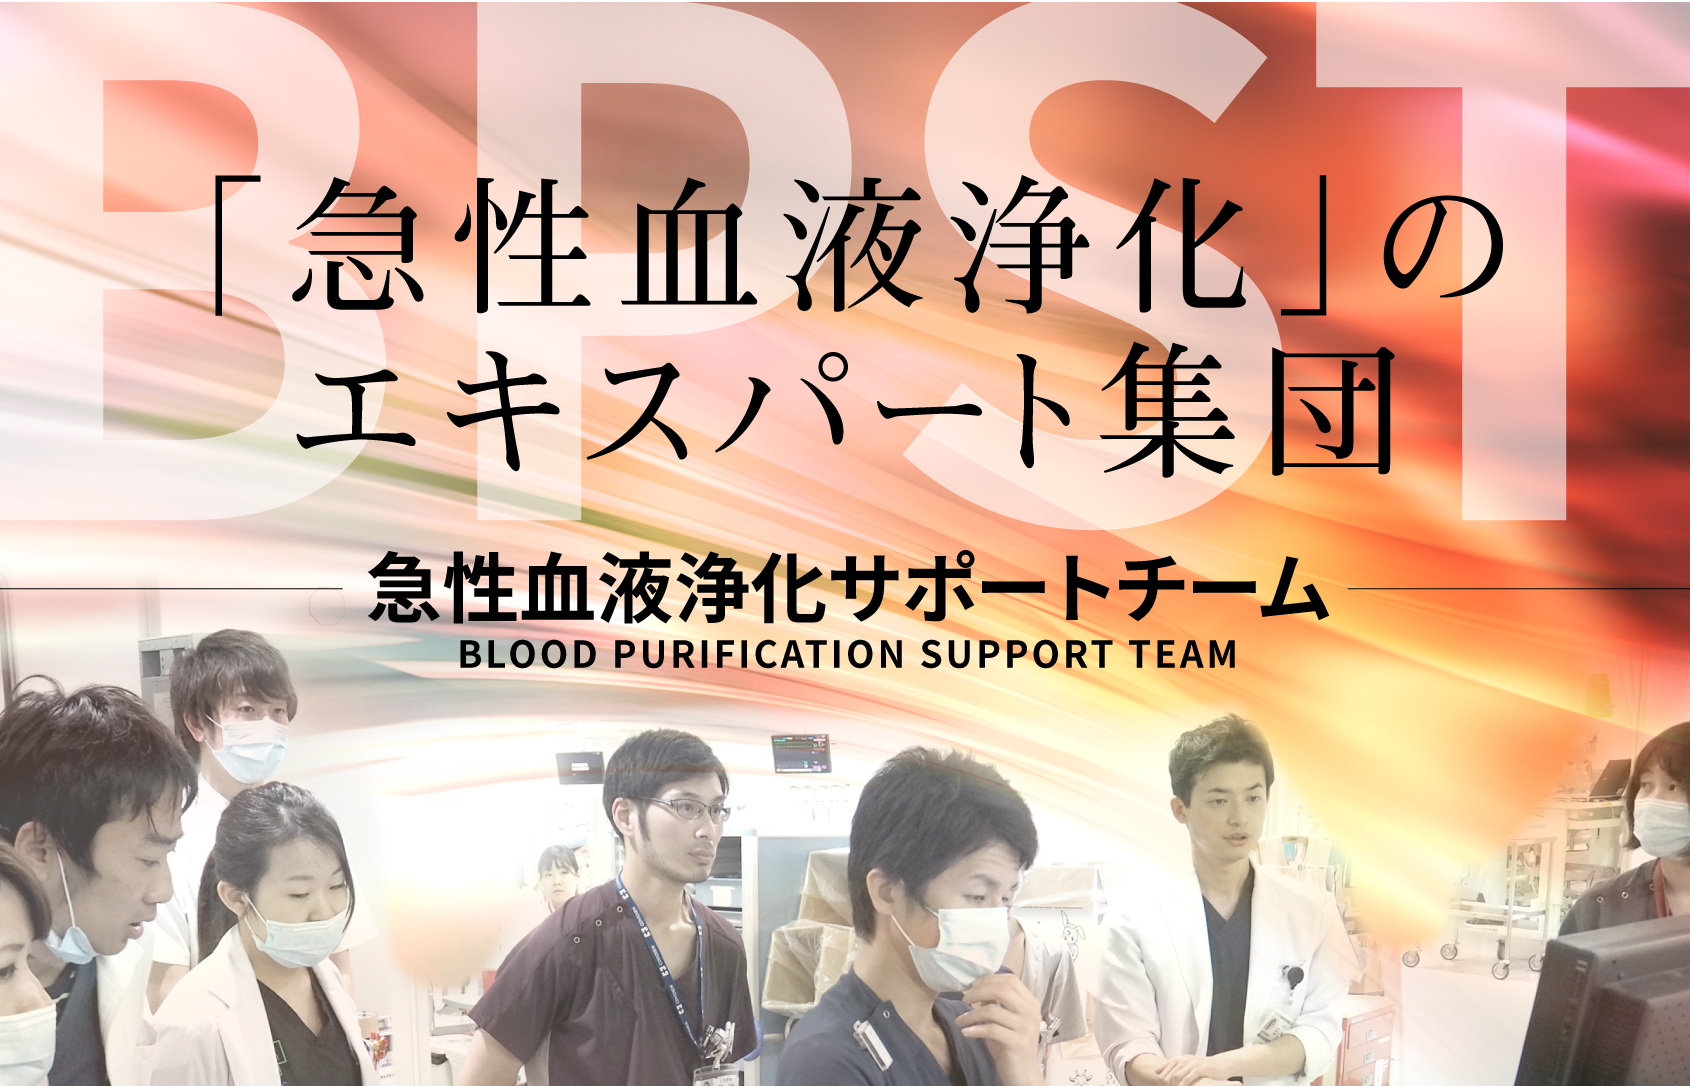 「急性血液浄化」のエキスパート集団：BPST 急性血液浄化サポートチーム